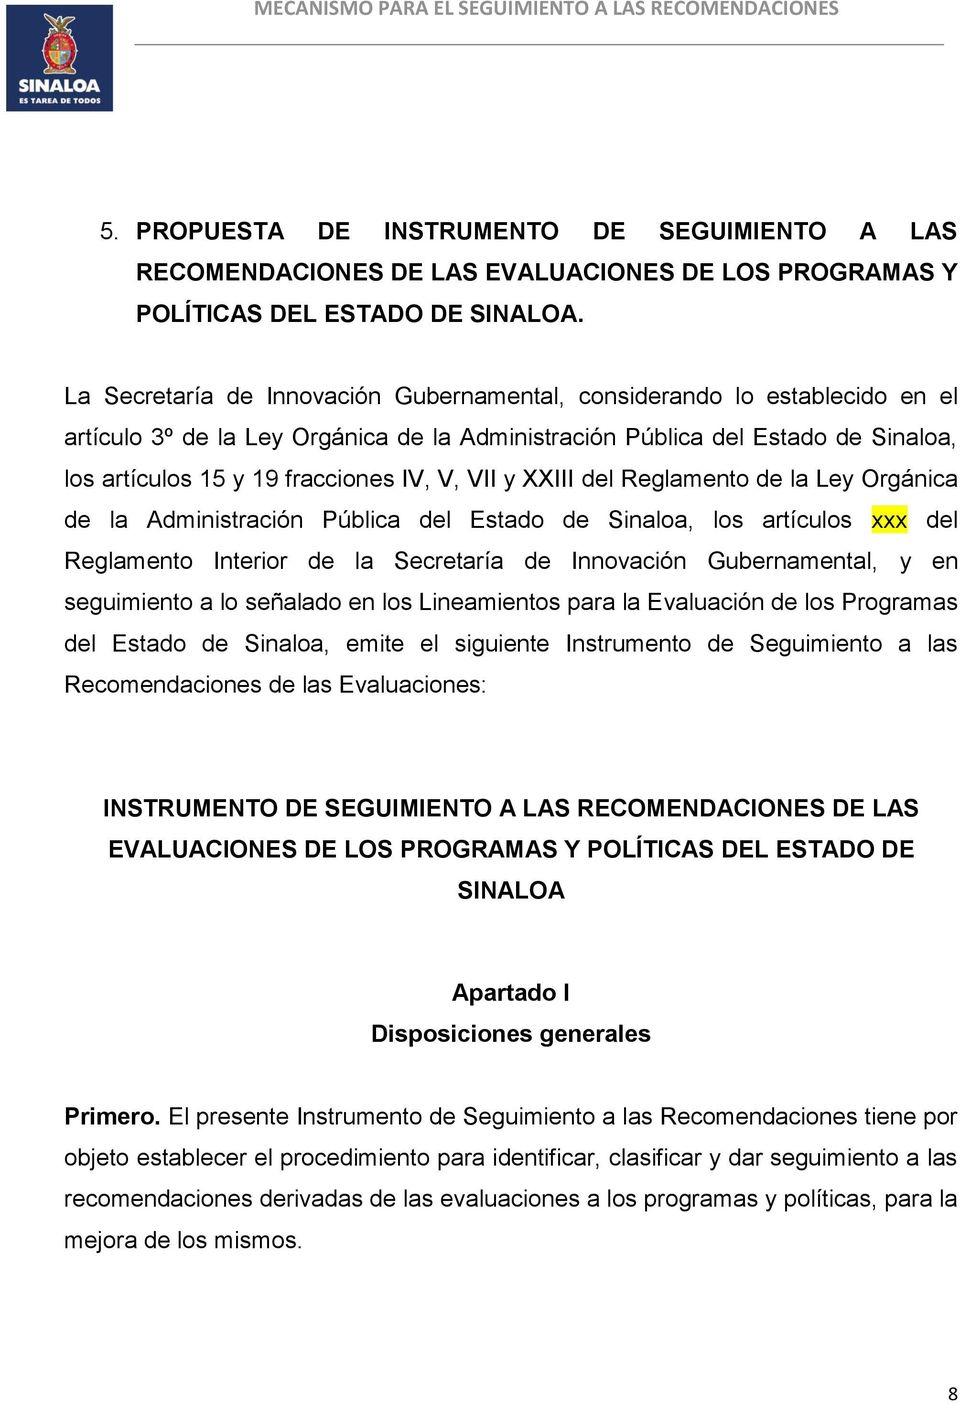 VII y XXIII del Reglamento de la Ley Orgánica de la Administración Pública del Estado de Sinaloa, los artículos xxx del Reglamento Interior de la Secretaría de Innovación Gubernamental, y en